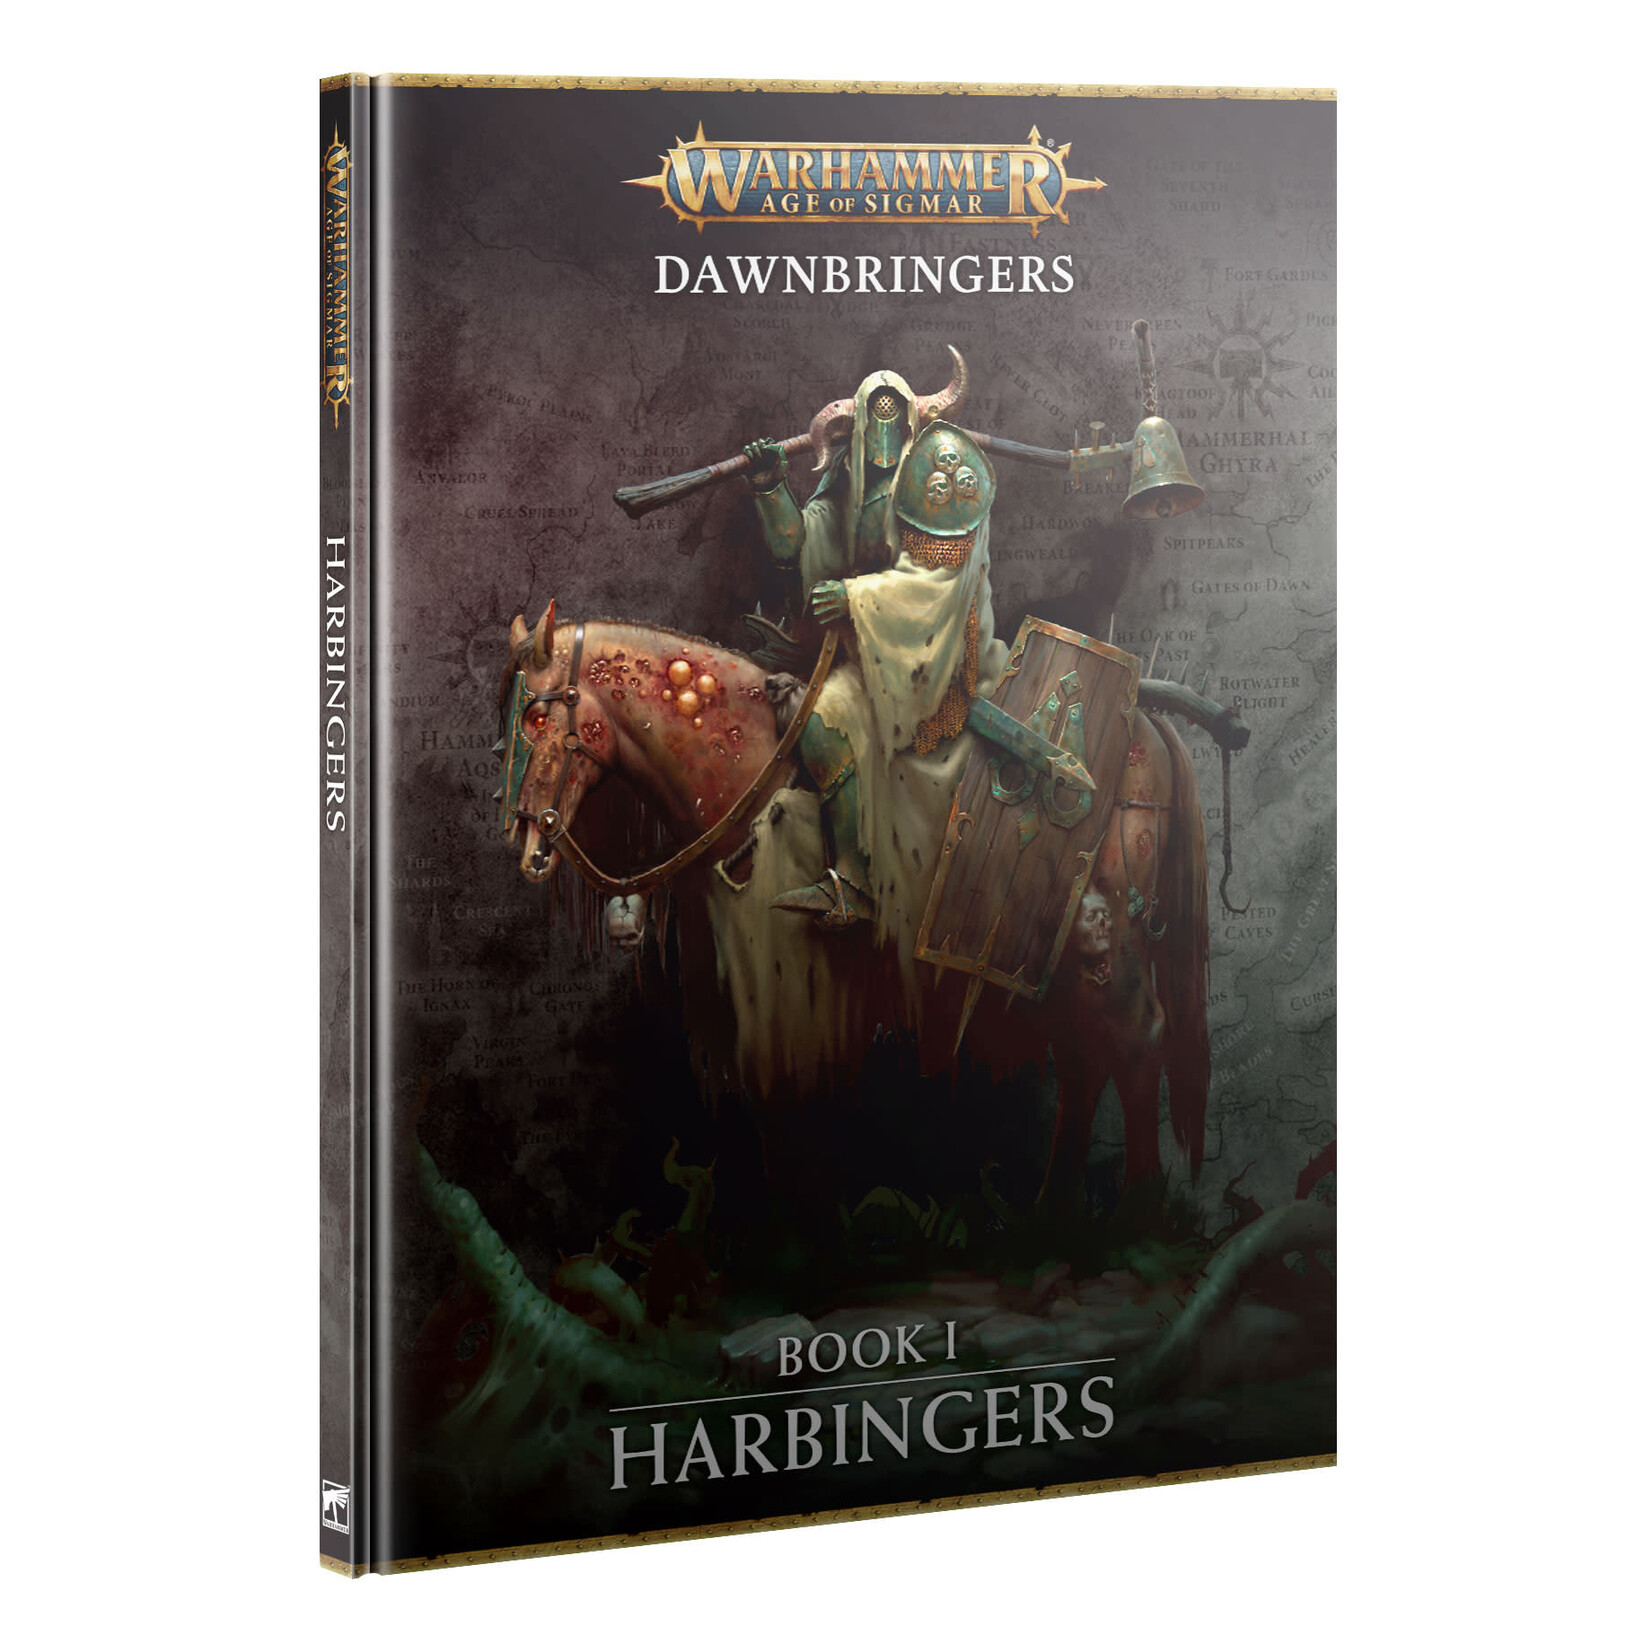 Games Workshop Warhammer Age of Sigmar Dawnbringers Book 1 Harbingers